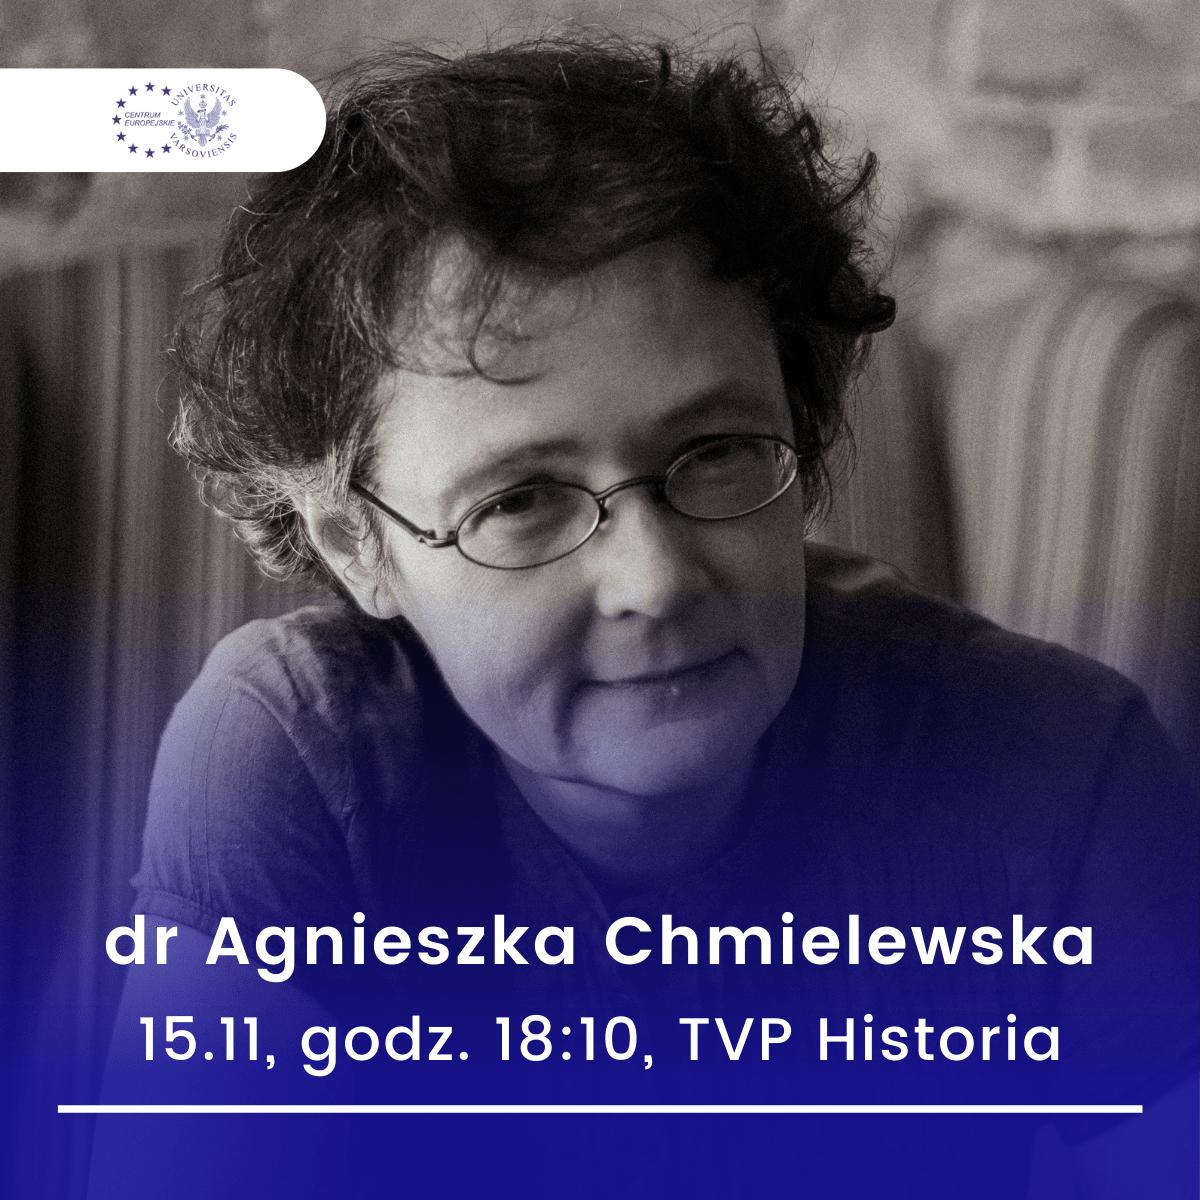 Dr Agnieszka Chmielewska W TVP Historia Już 15.11